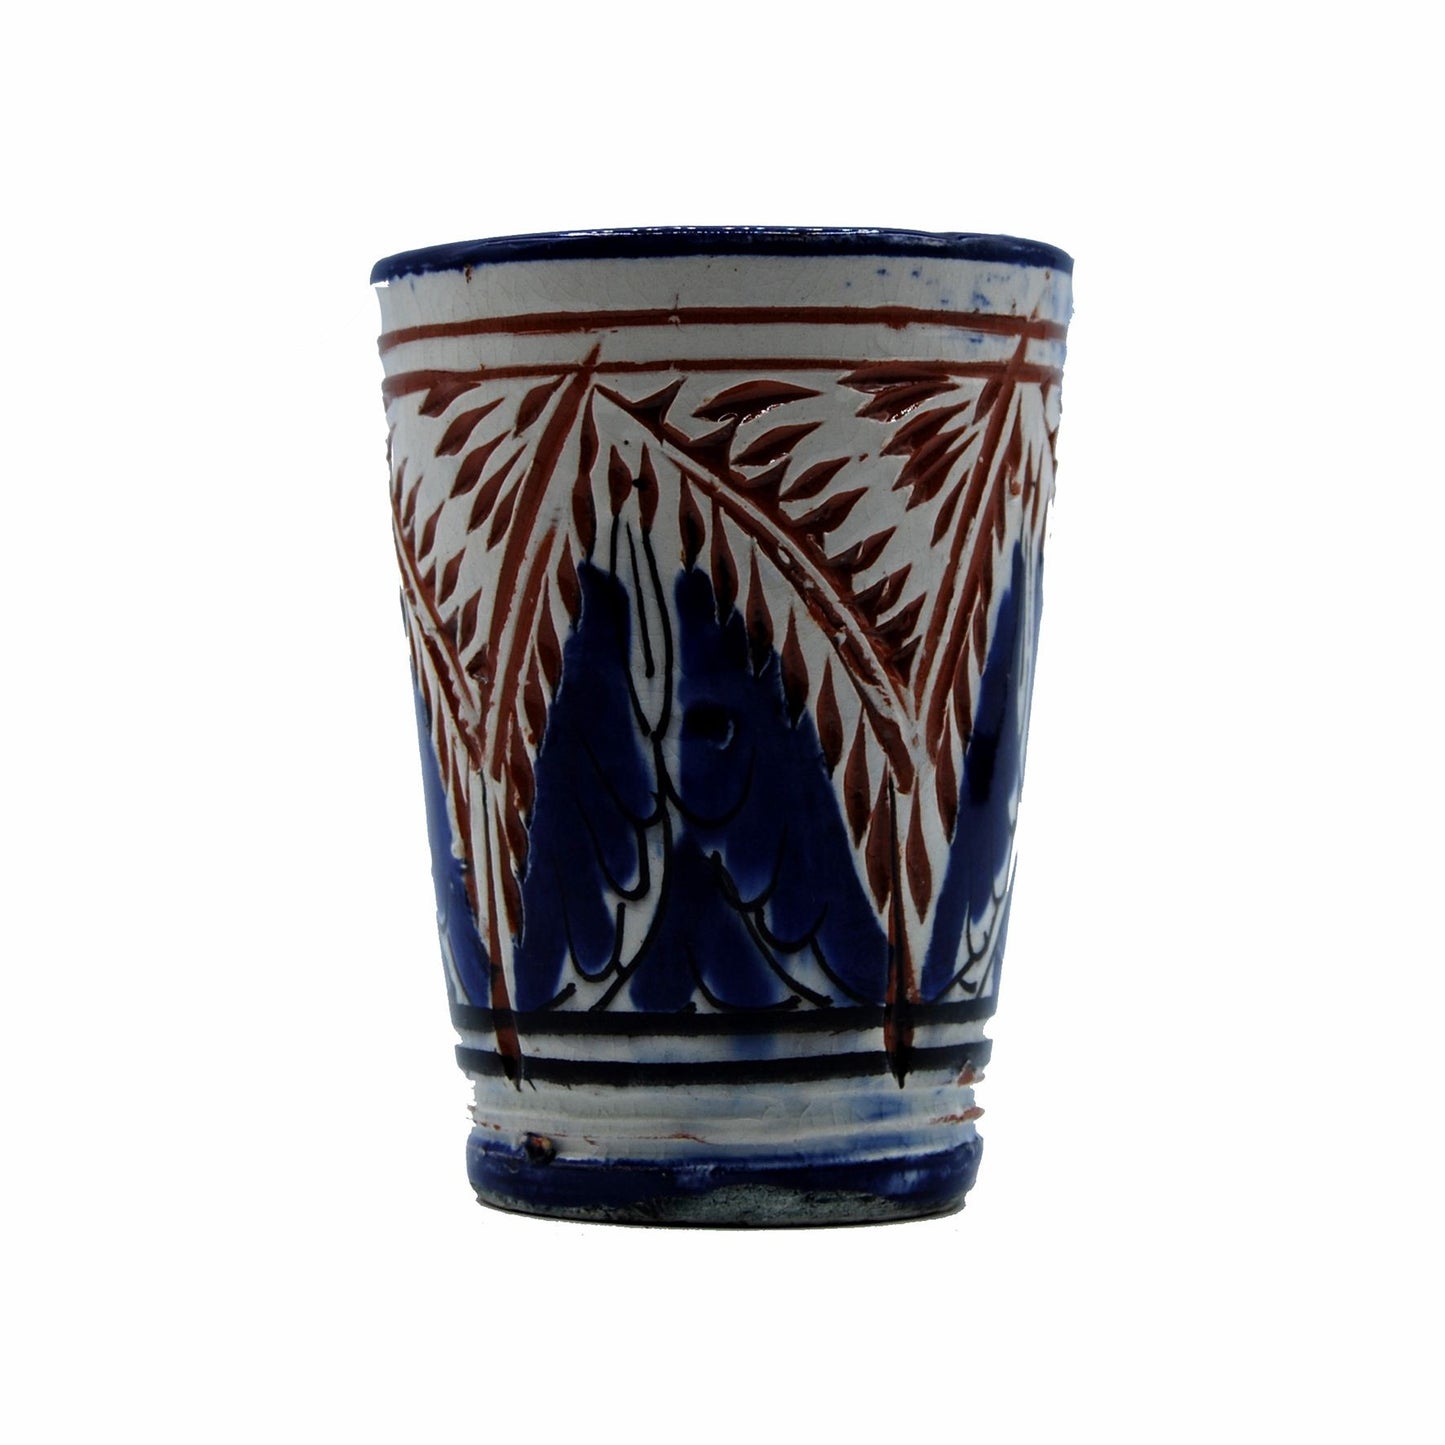 Arredamento Etnico Bicchiere Boccale Ceramica Terre Cuite Marocchino 3007190904